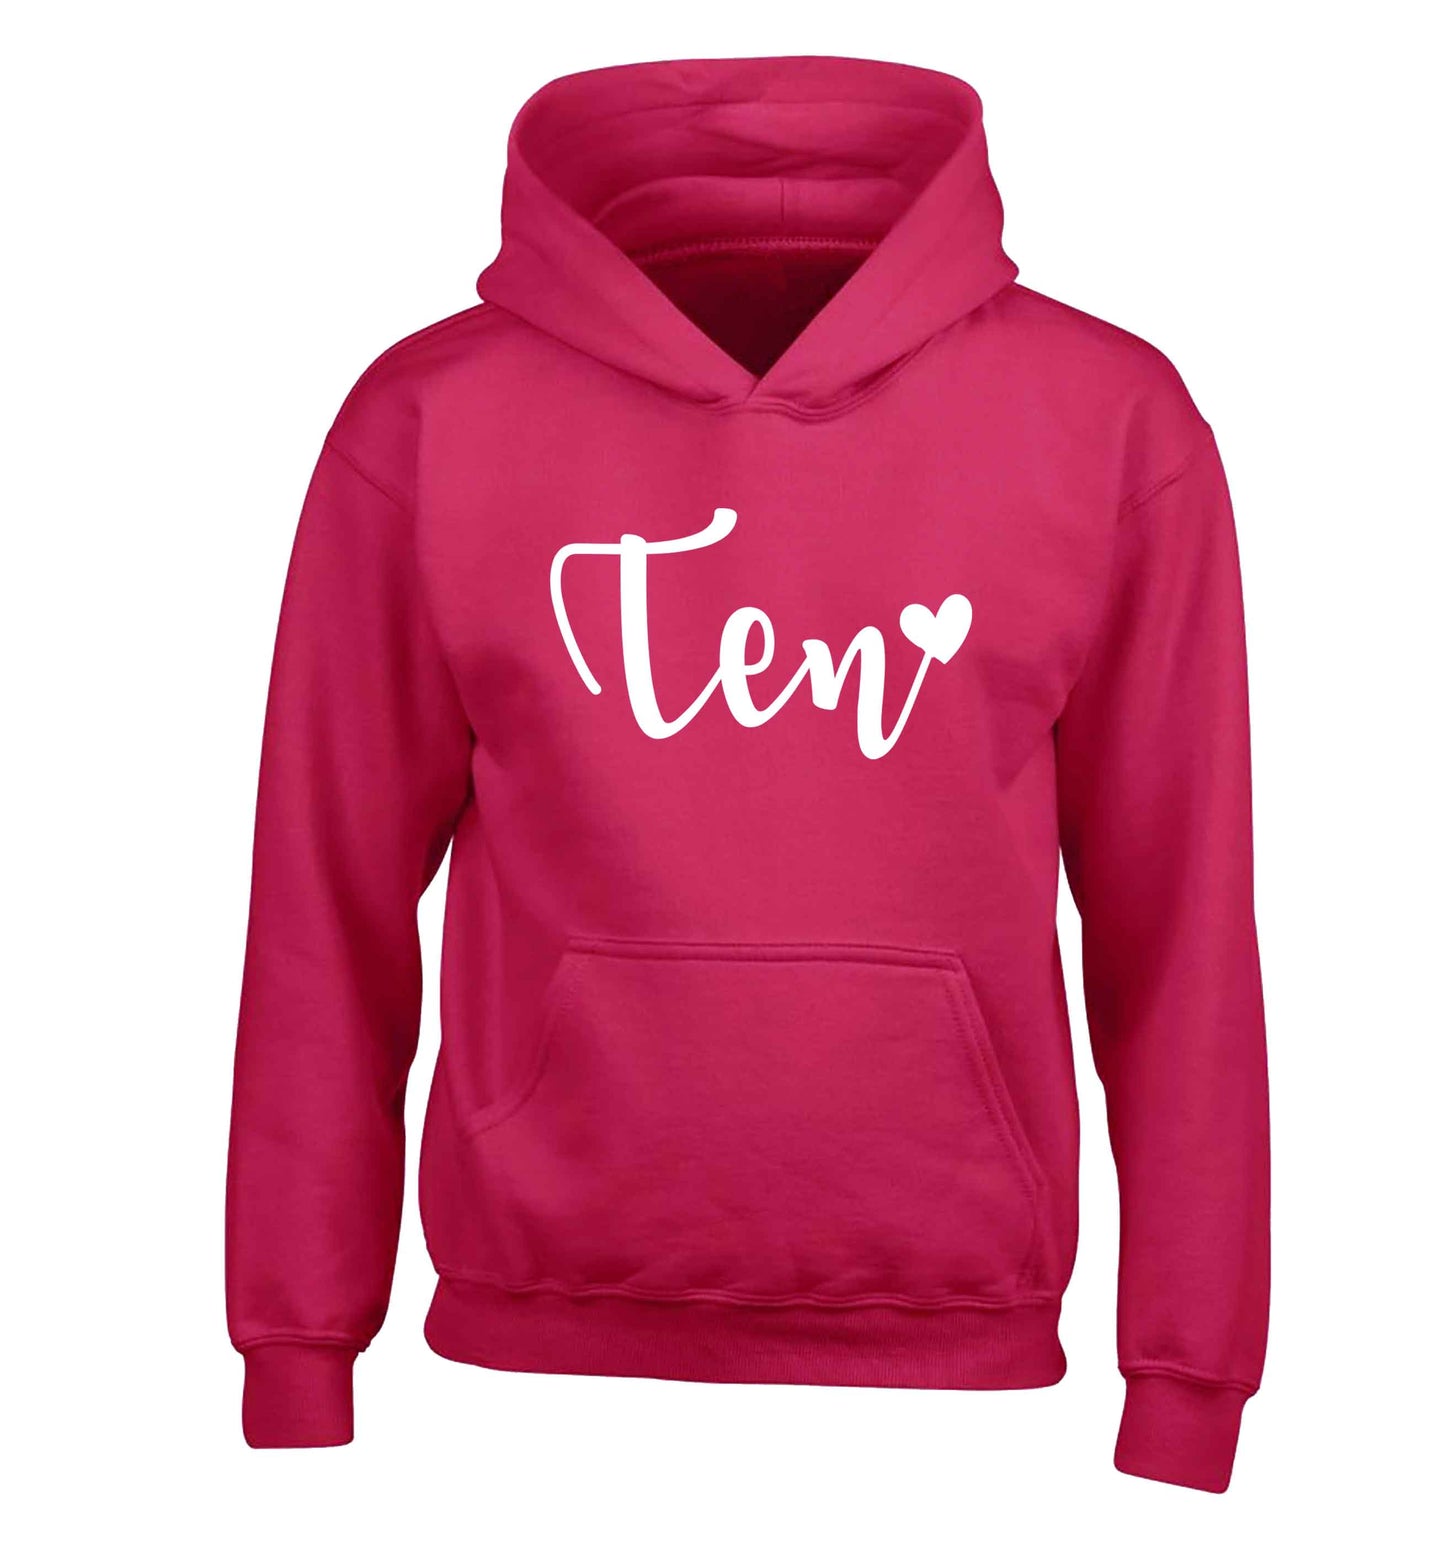 Ten and heart children's pink hoodie 12-13 Years